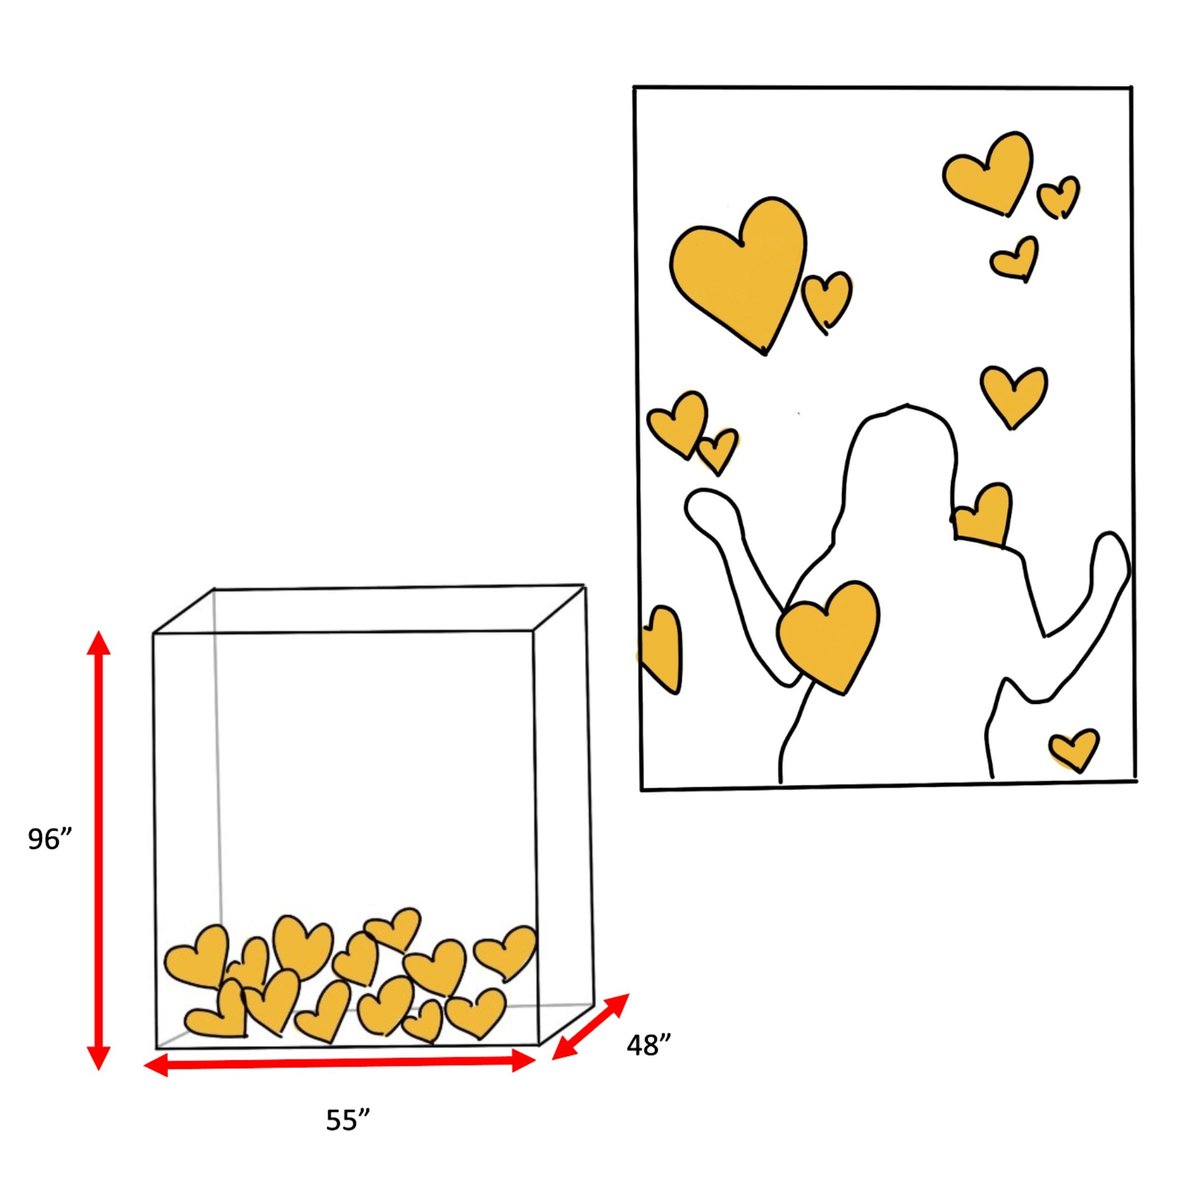 Barilla Stepping into Love Box - Concept Sketch